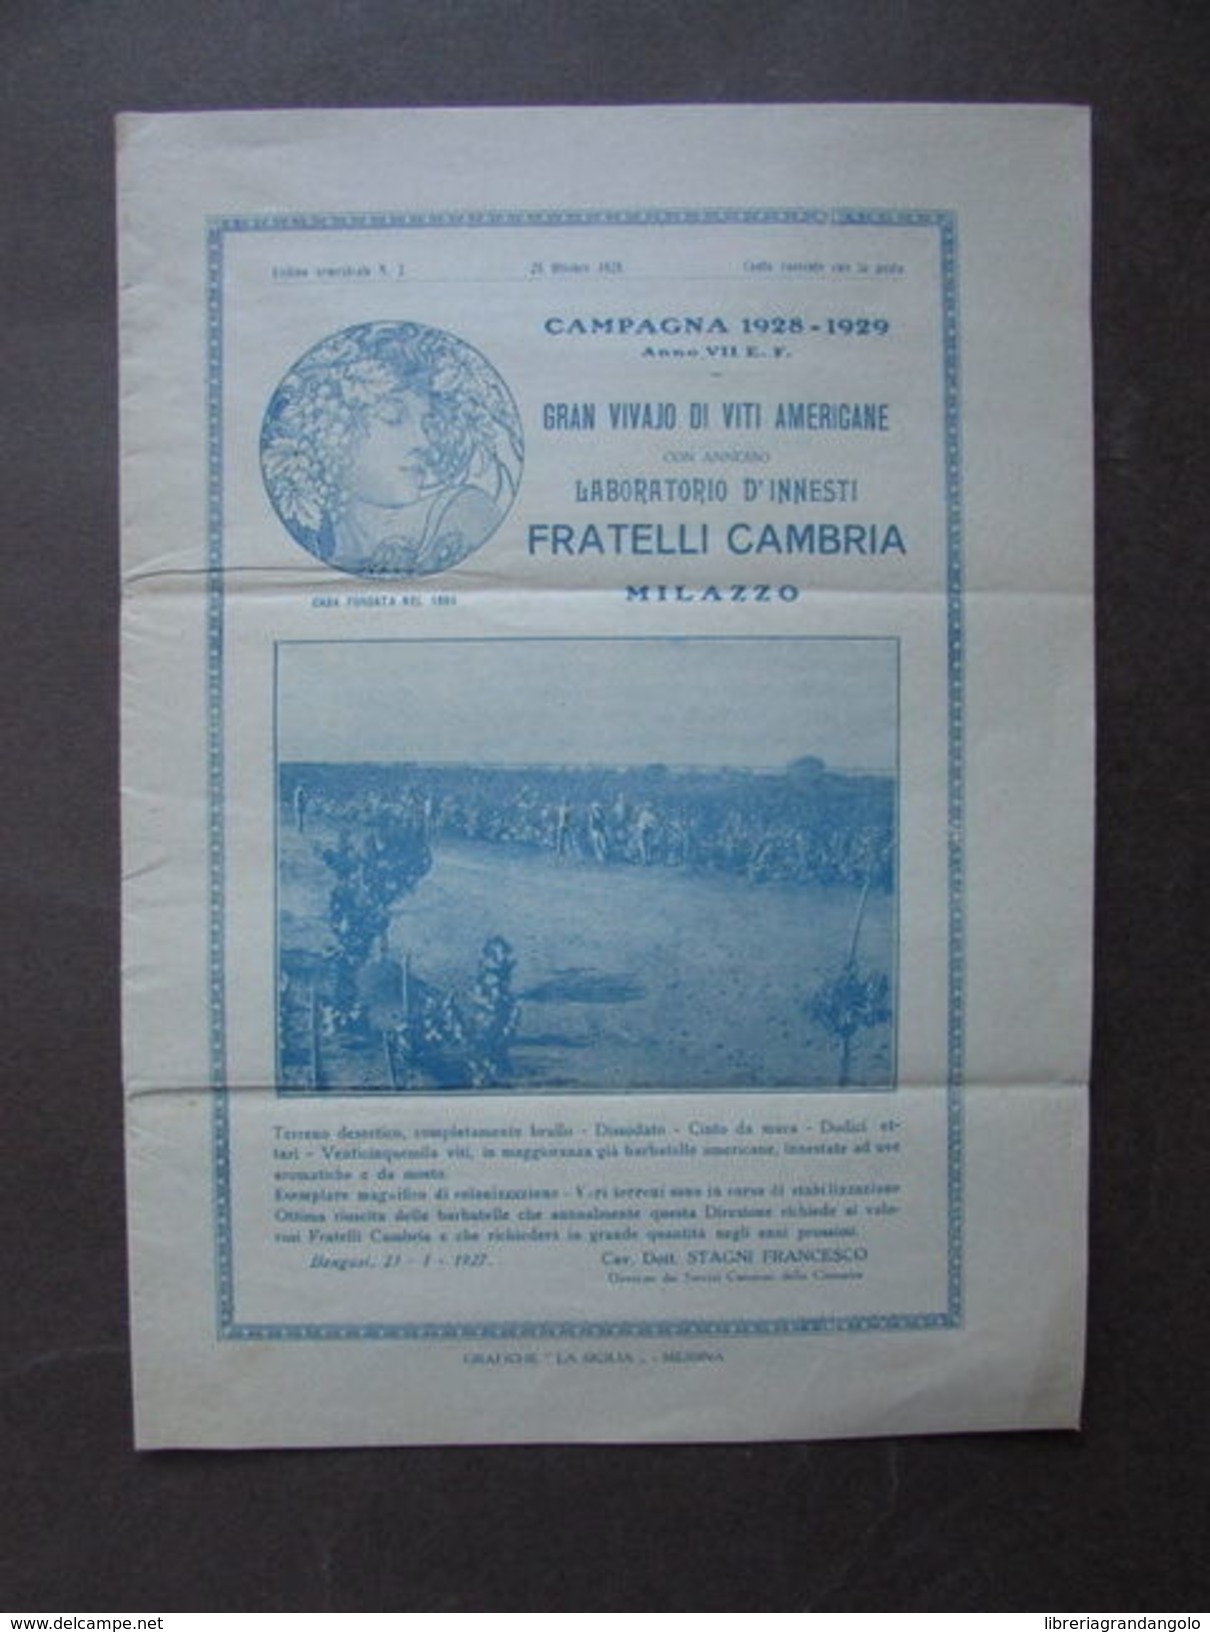 Catalogo Vivaio Viti Americane Innesti Cambria Milazzo 1928 Uva Agricoltura - Non Classificati